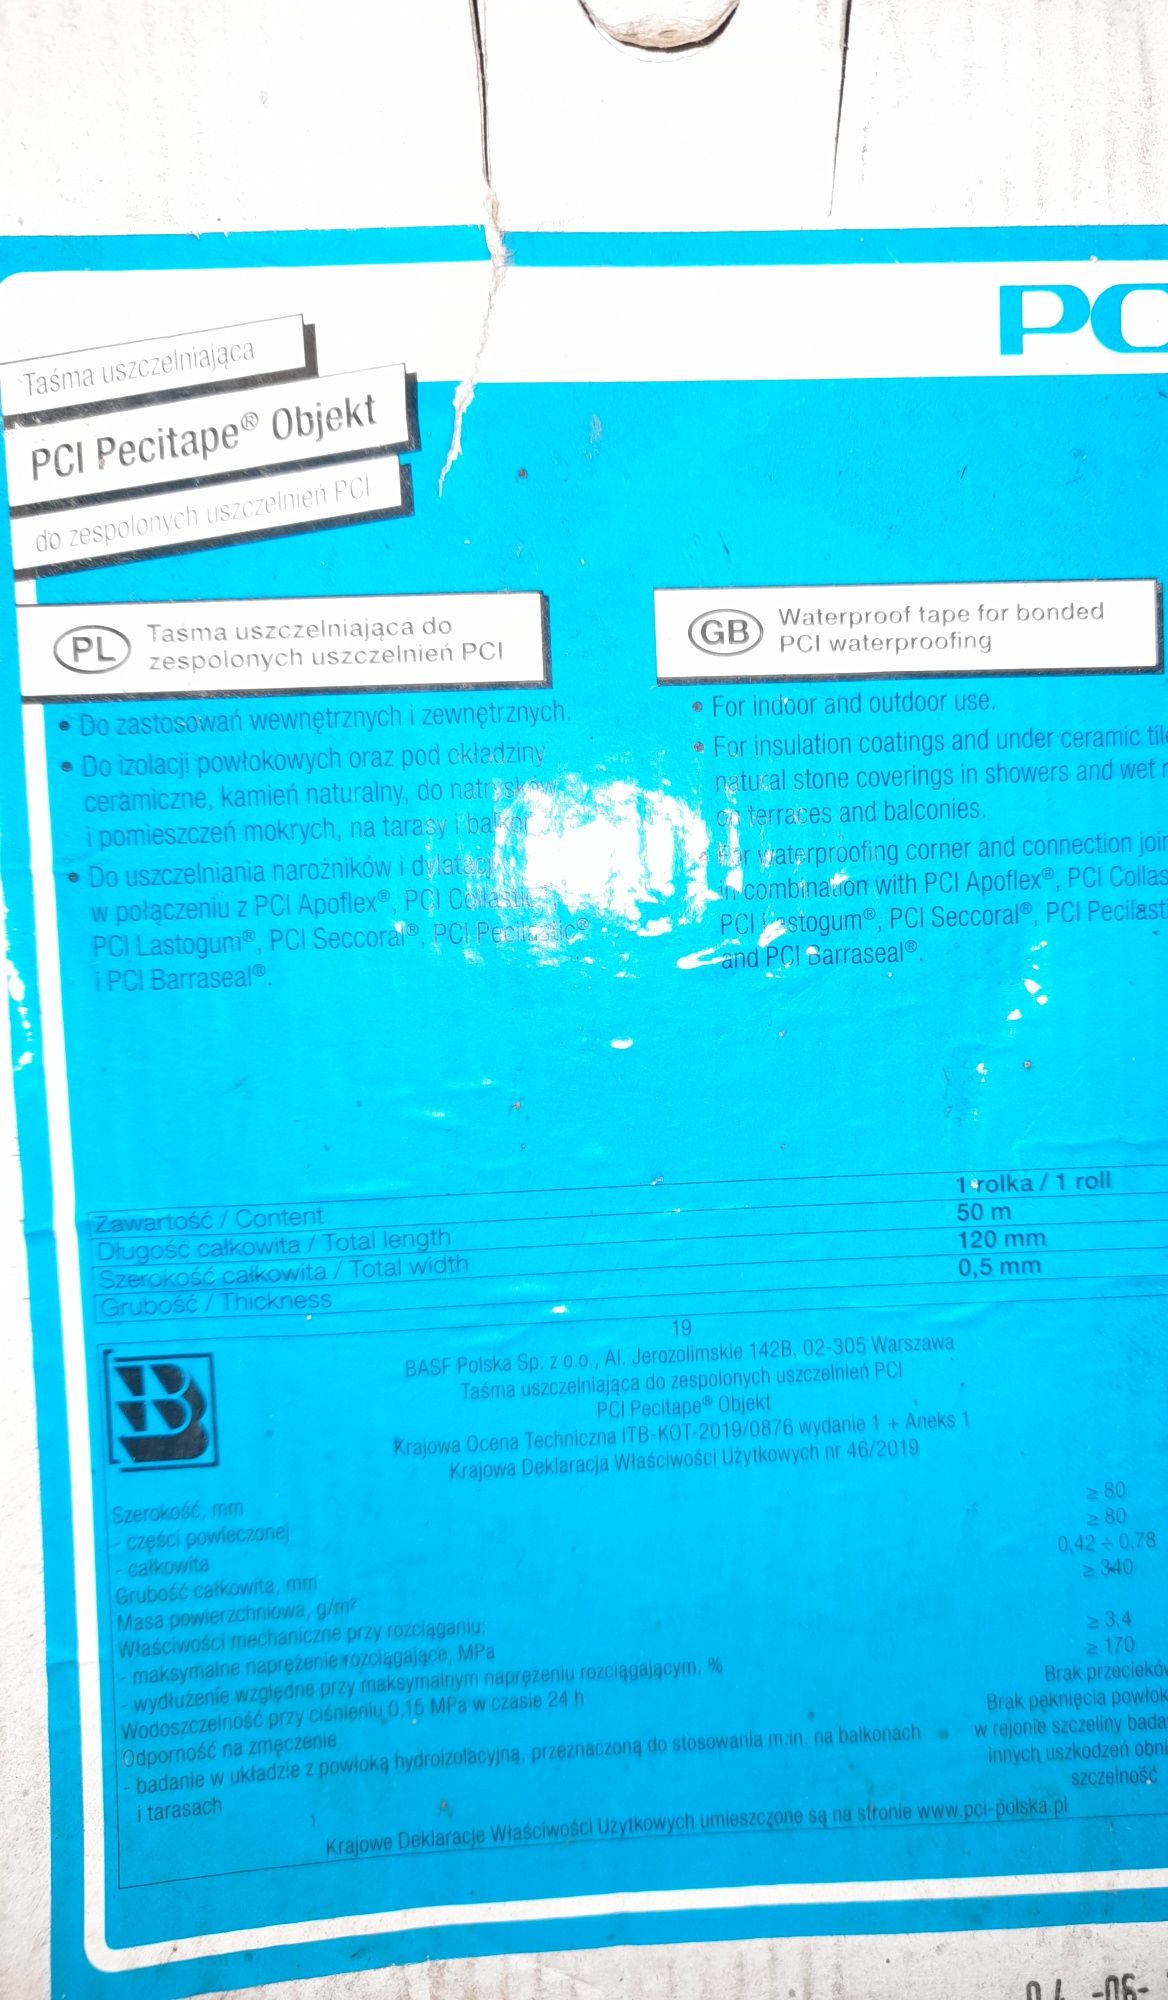 Taśma uszczelniająca PCI Pecitape Objekt 50mb Hydroizolacja